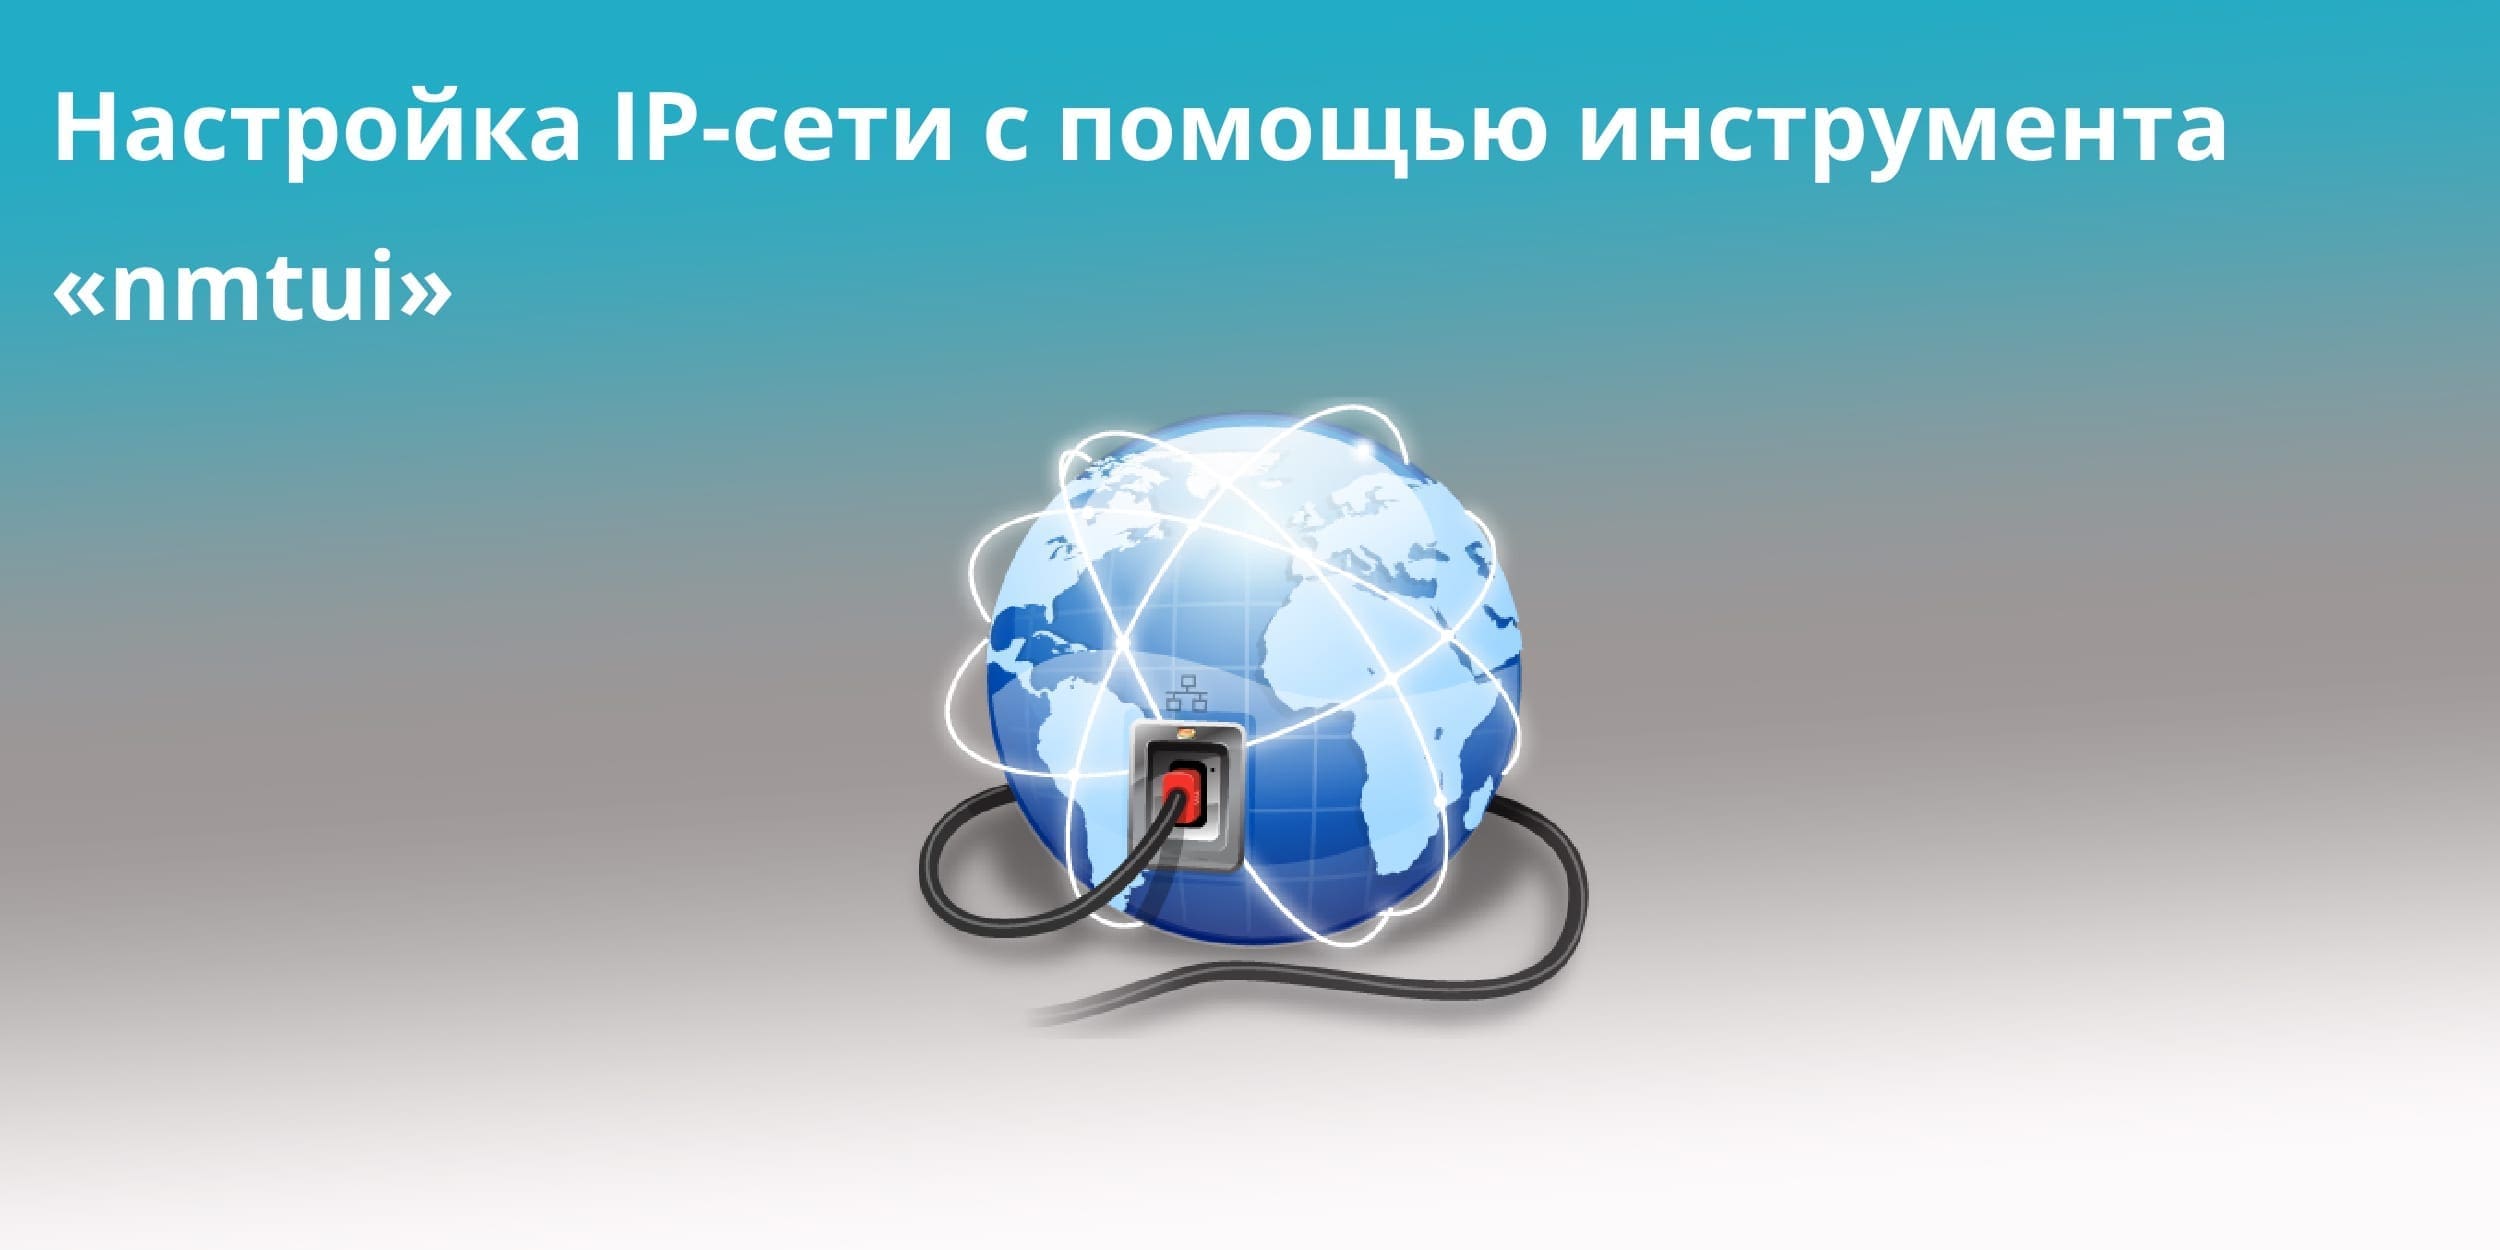 Настройка IP-сети с помощью инструмента «nmtui»